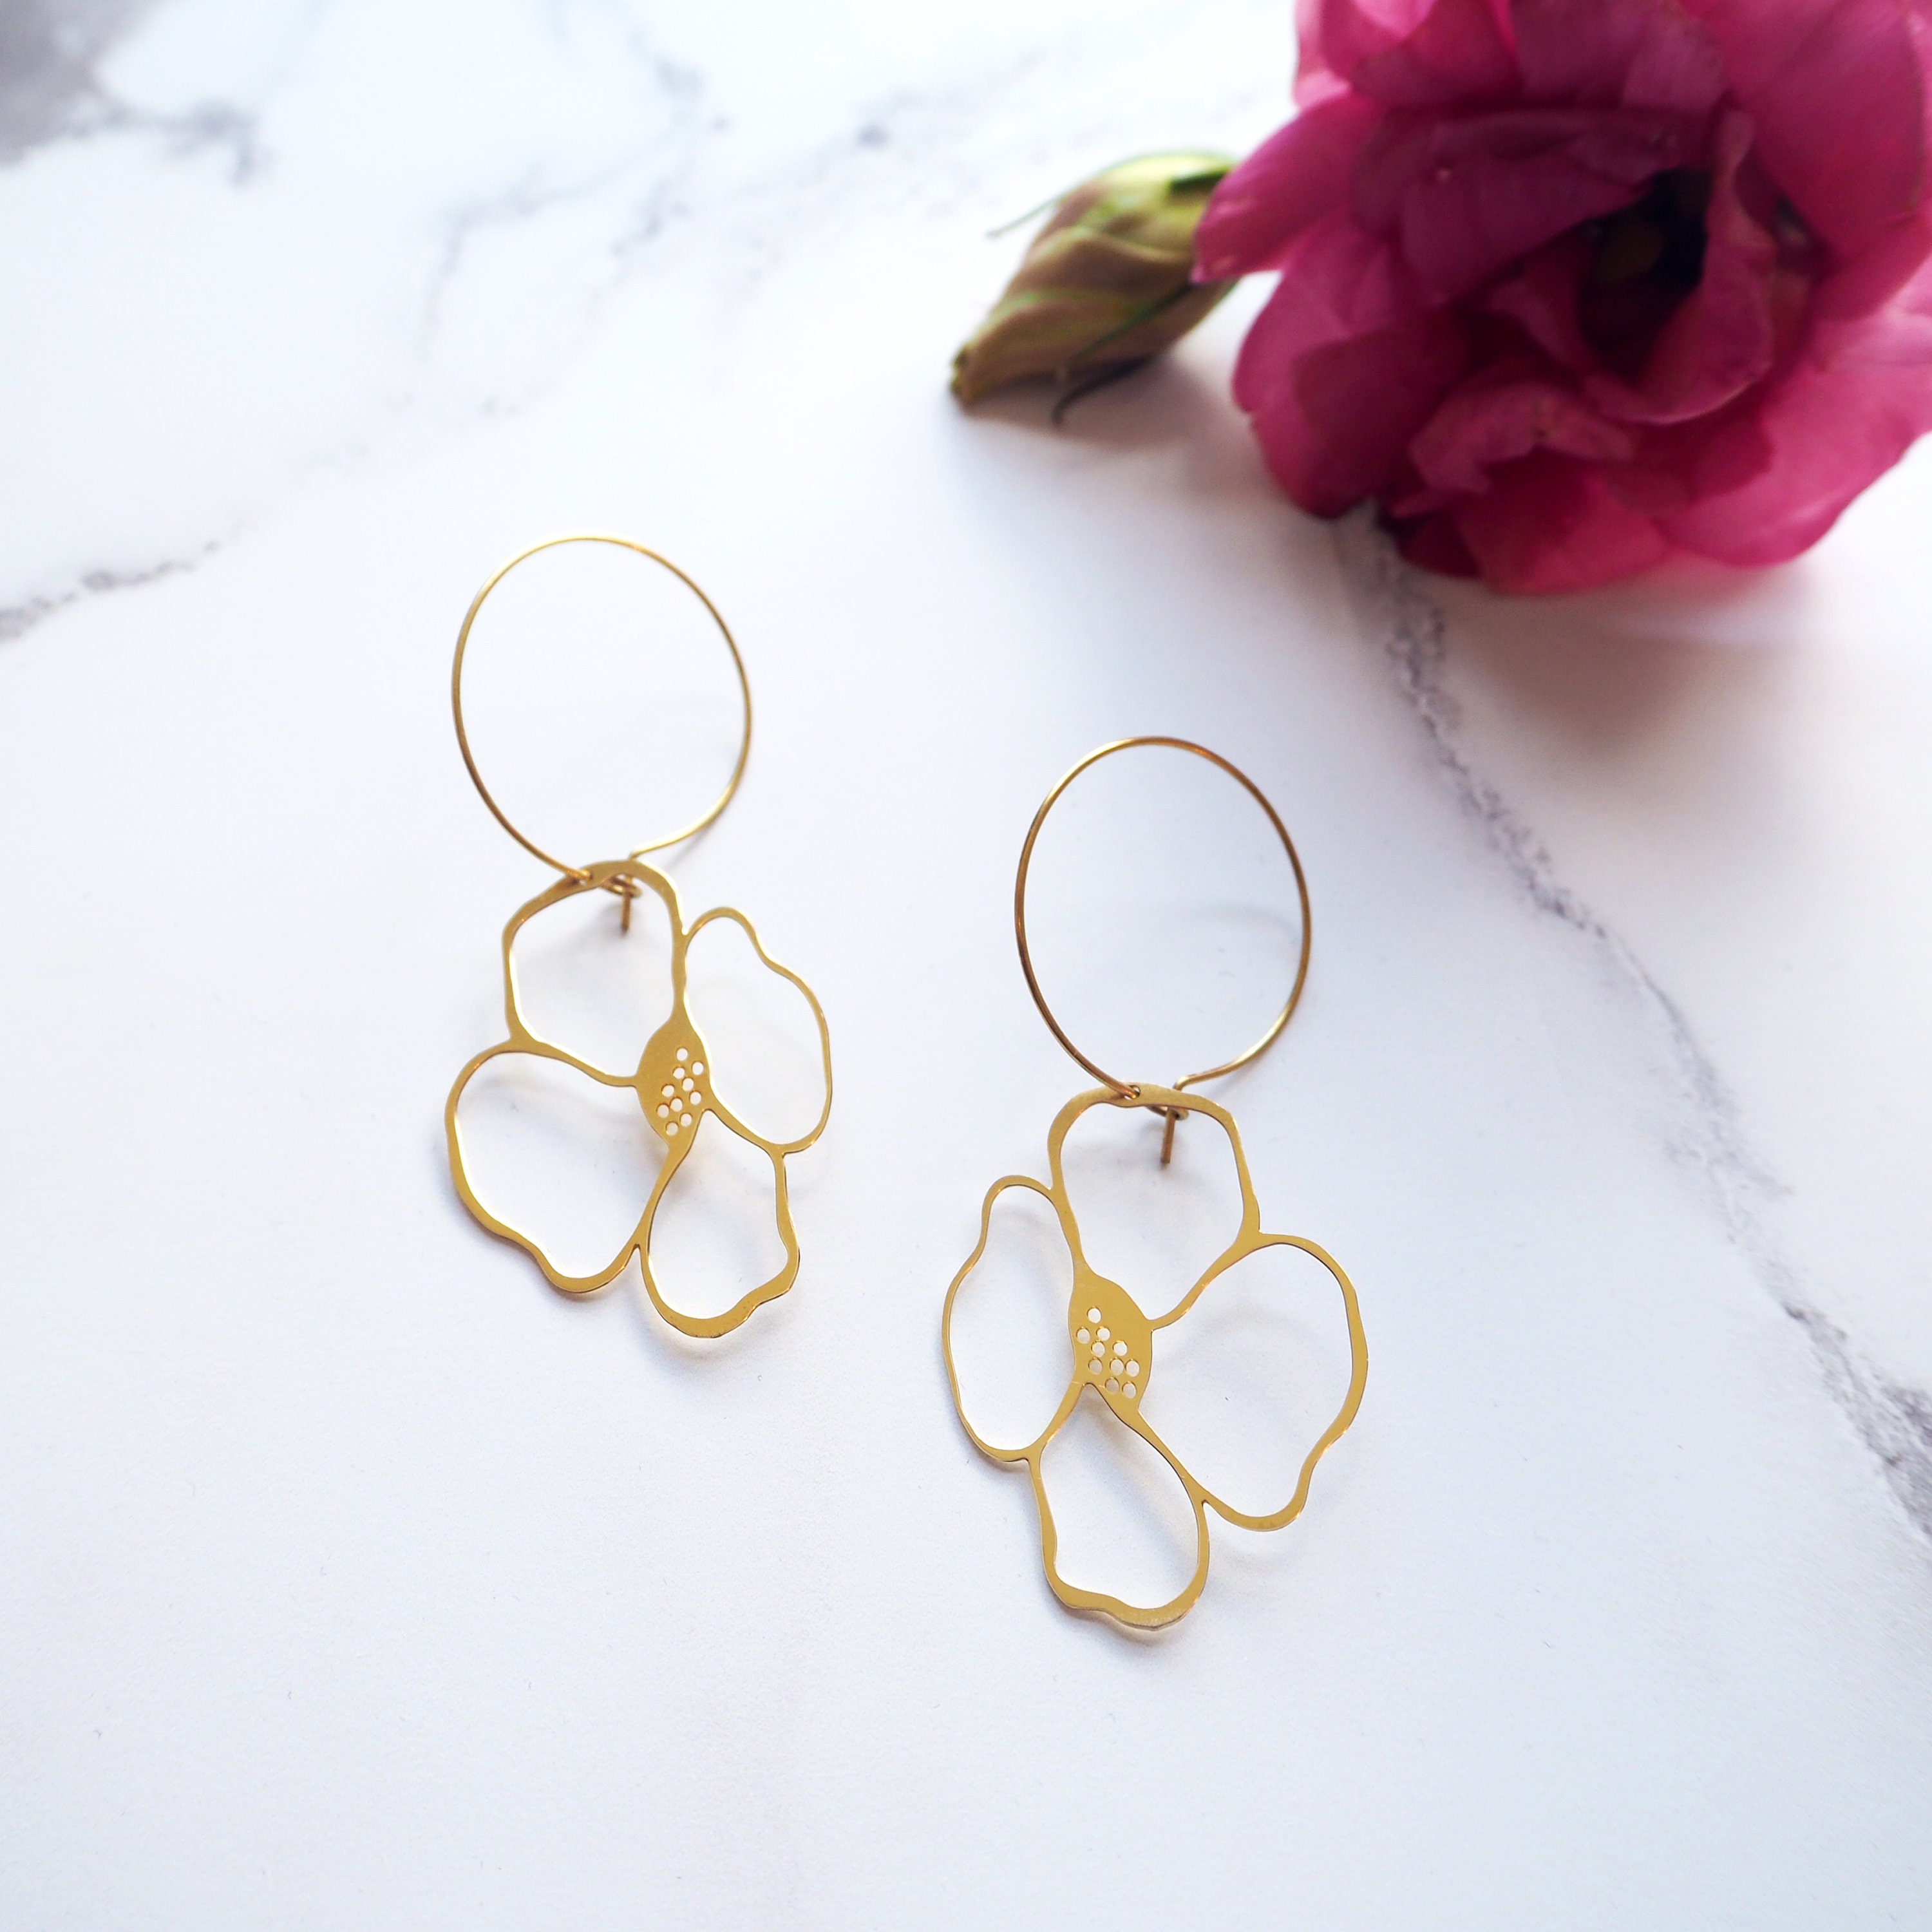 Gold Floral Hoop Earrings - Minimal Simple Laser Cut Hoops Anemone Flower